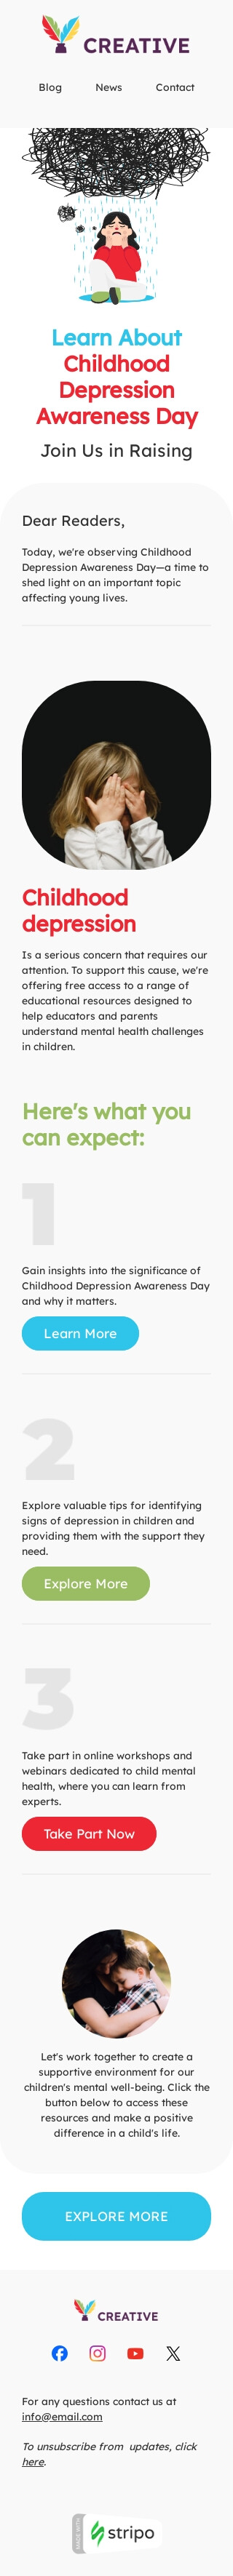 Modelo de e-mail de «Depressão infantil» de Dia de conscientização sobre a depressão infantil para a indústria de publicações & blogs Visualização de dispositivo móvel